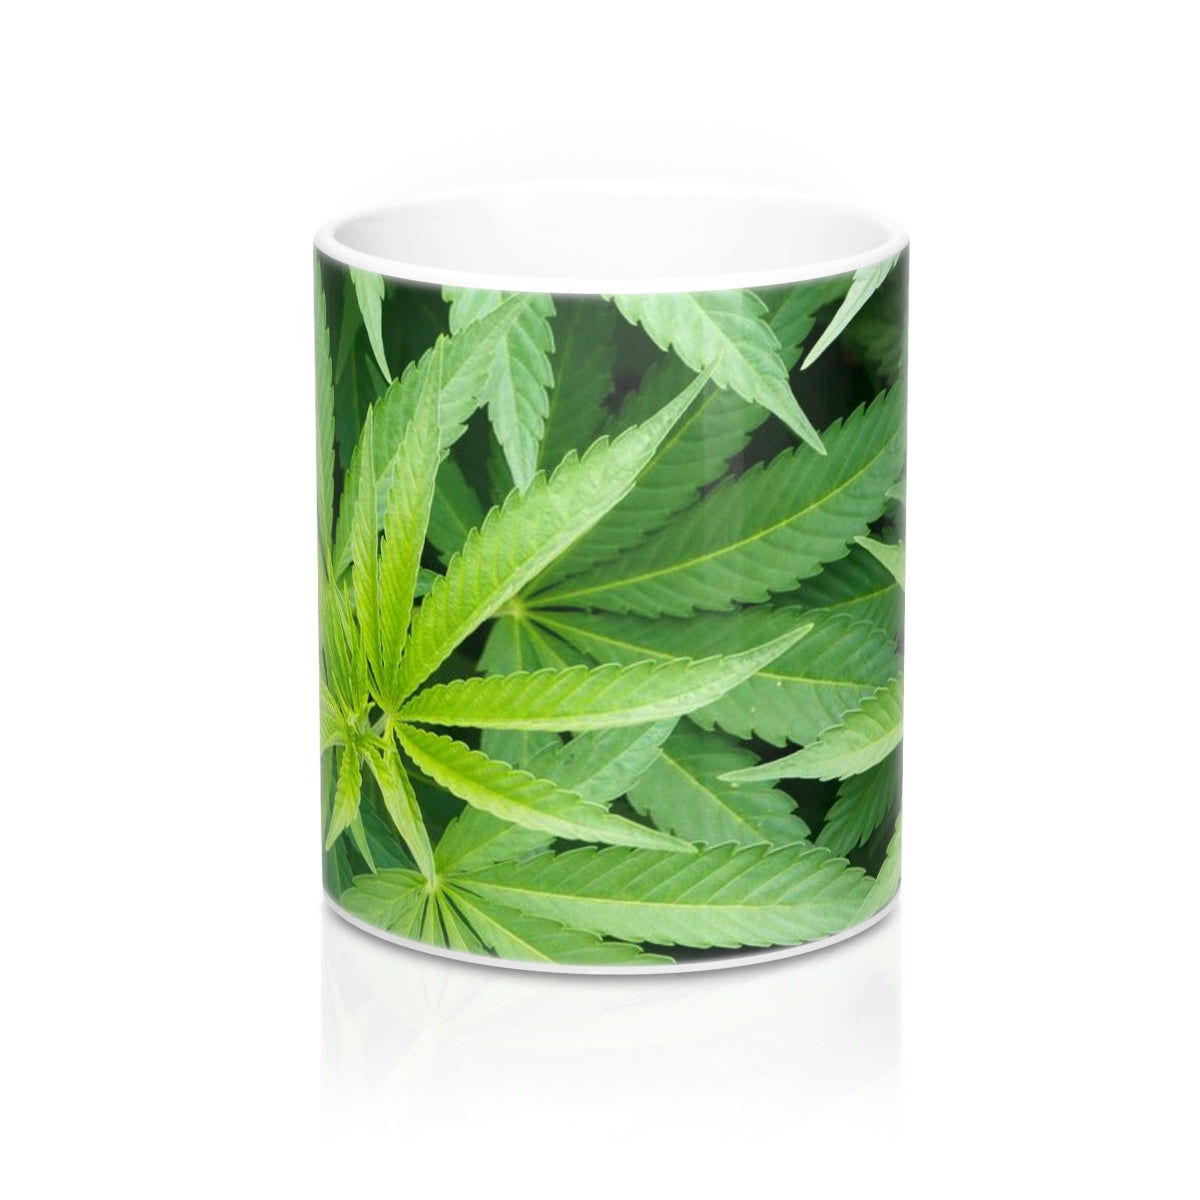 Cannabis Mug